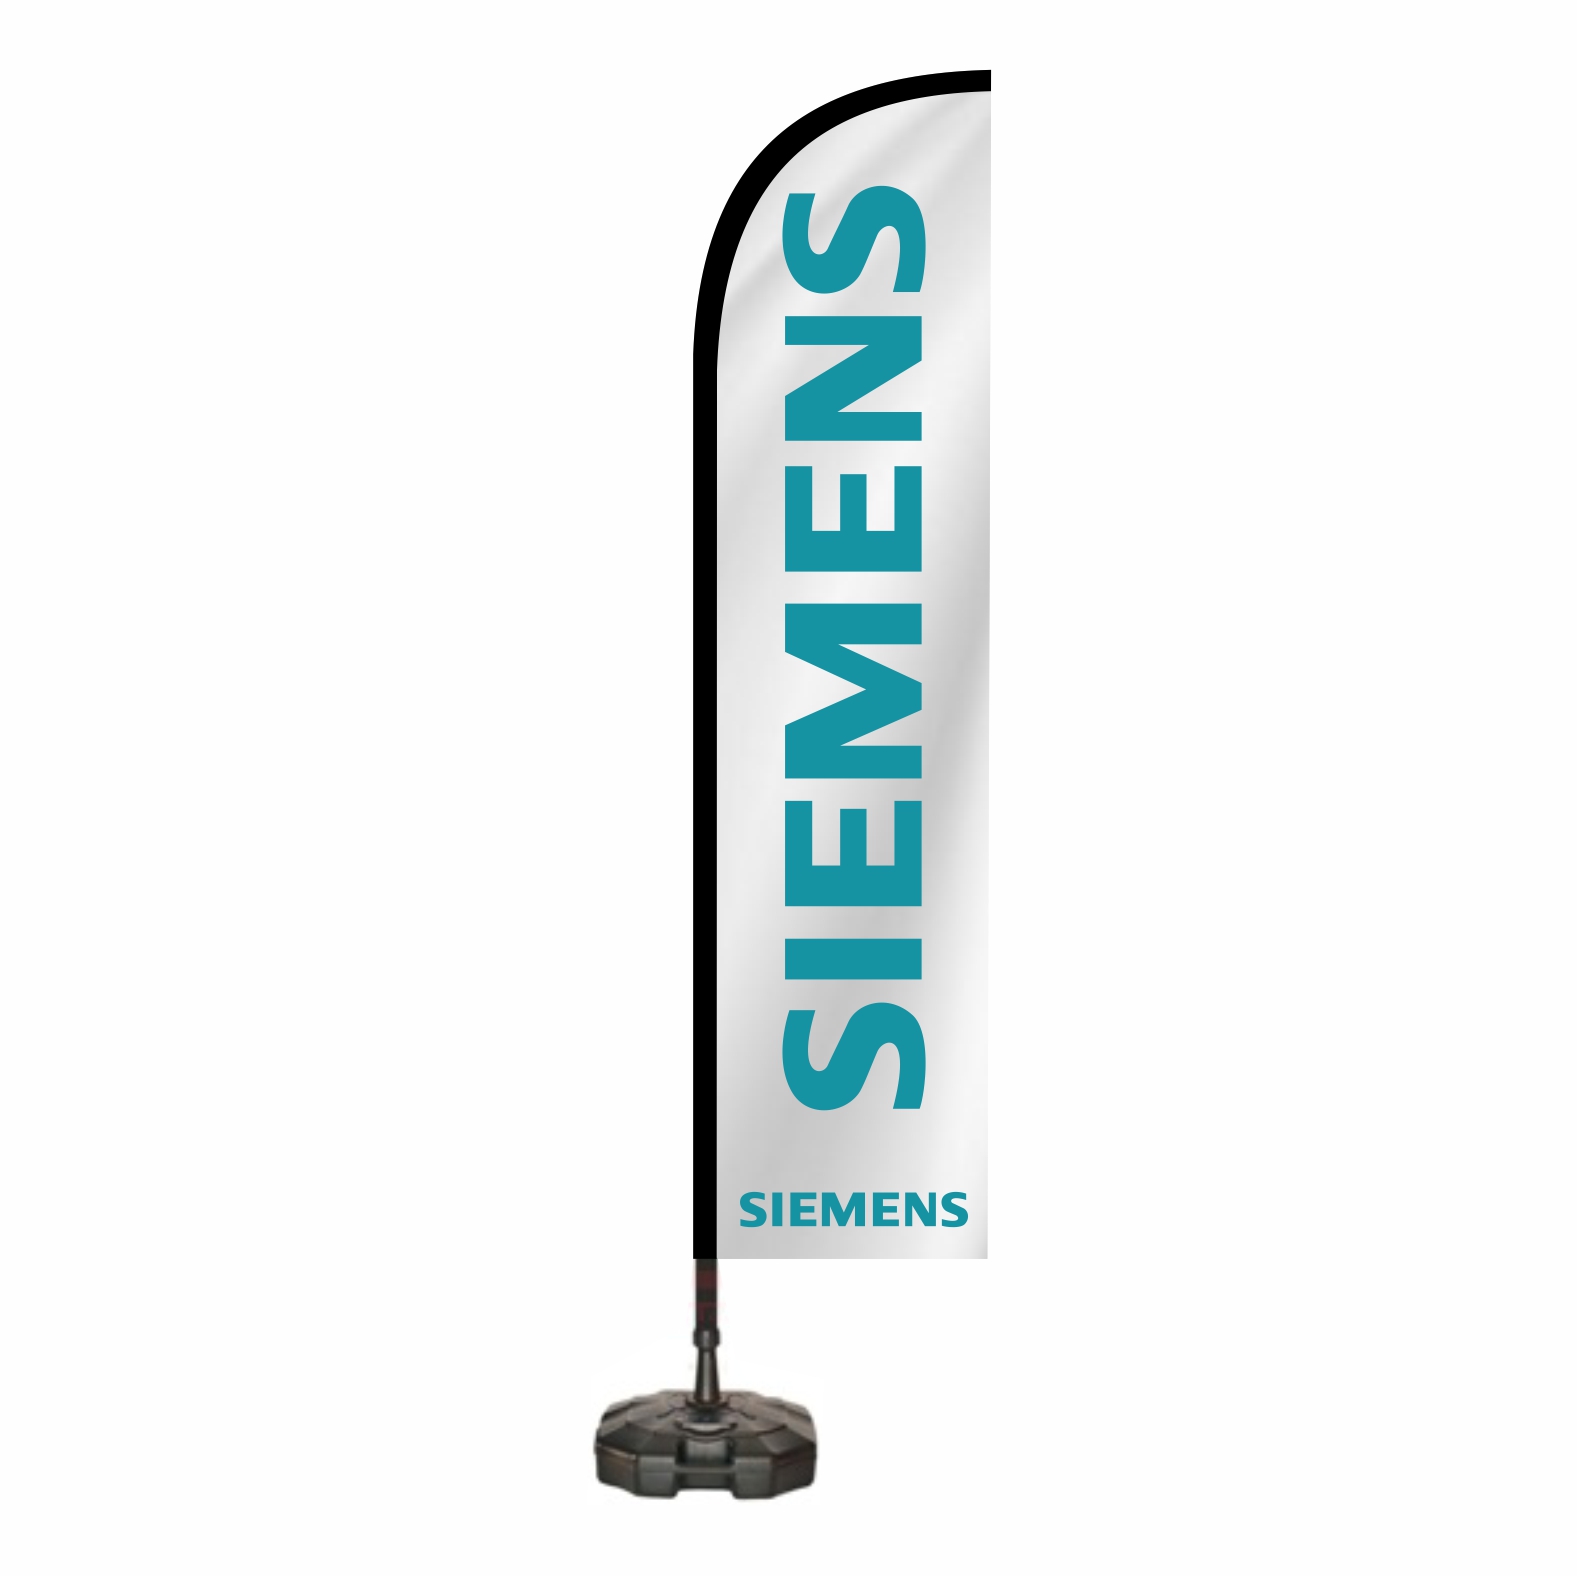 Siemens Oltal Bayra zellikleri